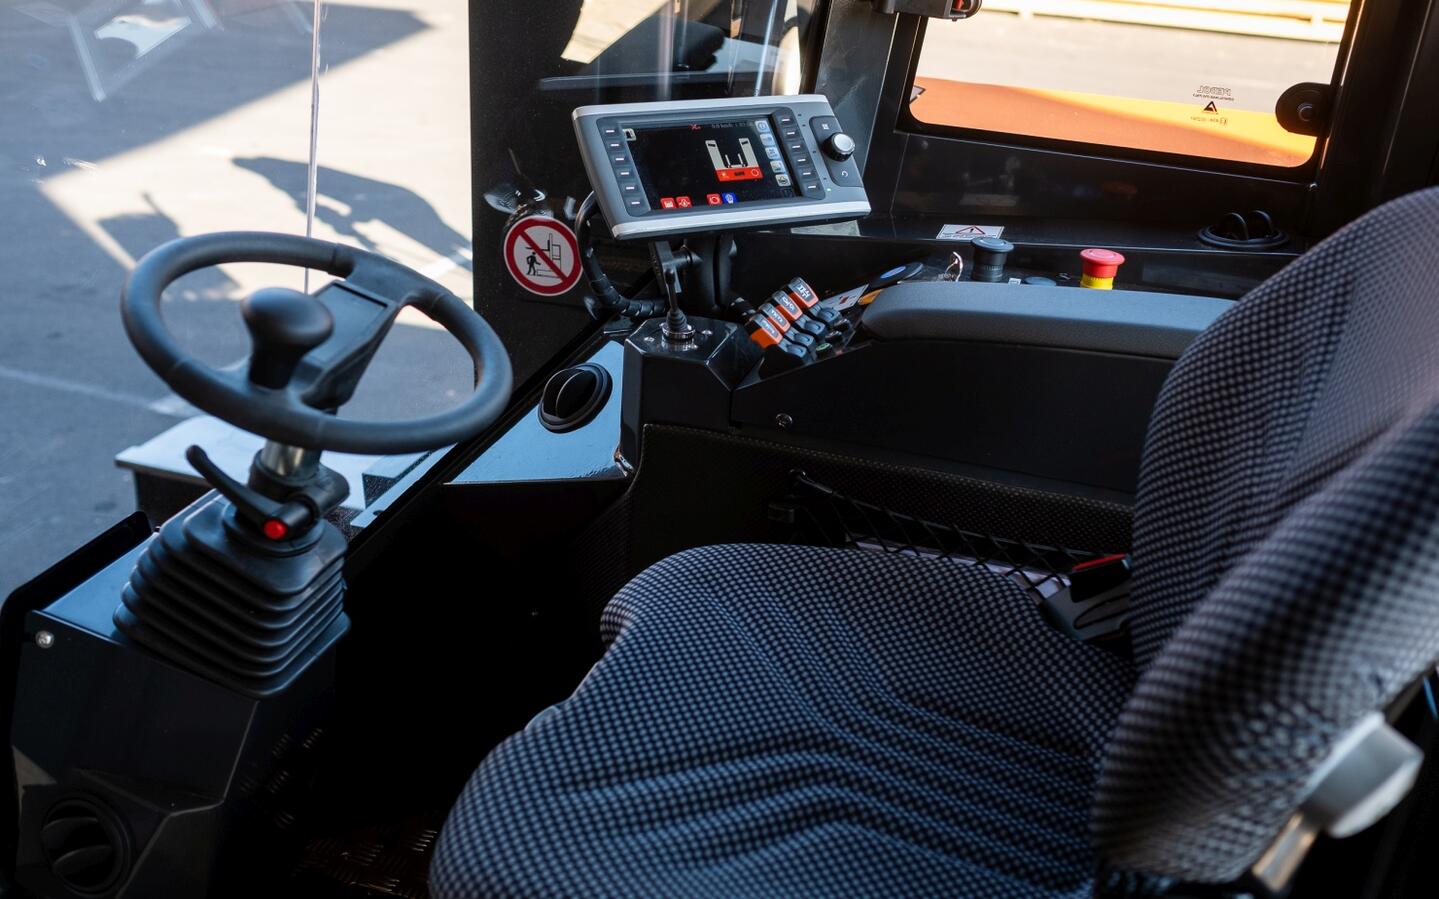 HUBTEX DQ-X 45 biedt het beste rondomzicht door de ruime bestuurderscabine